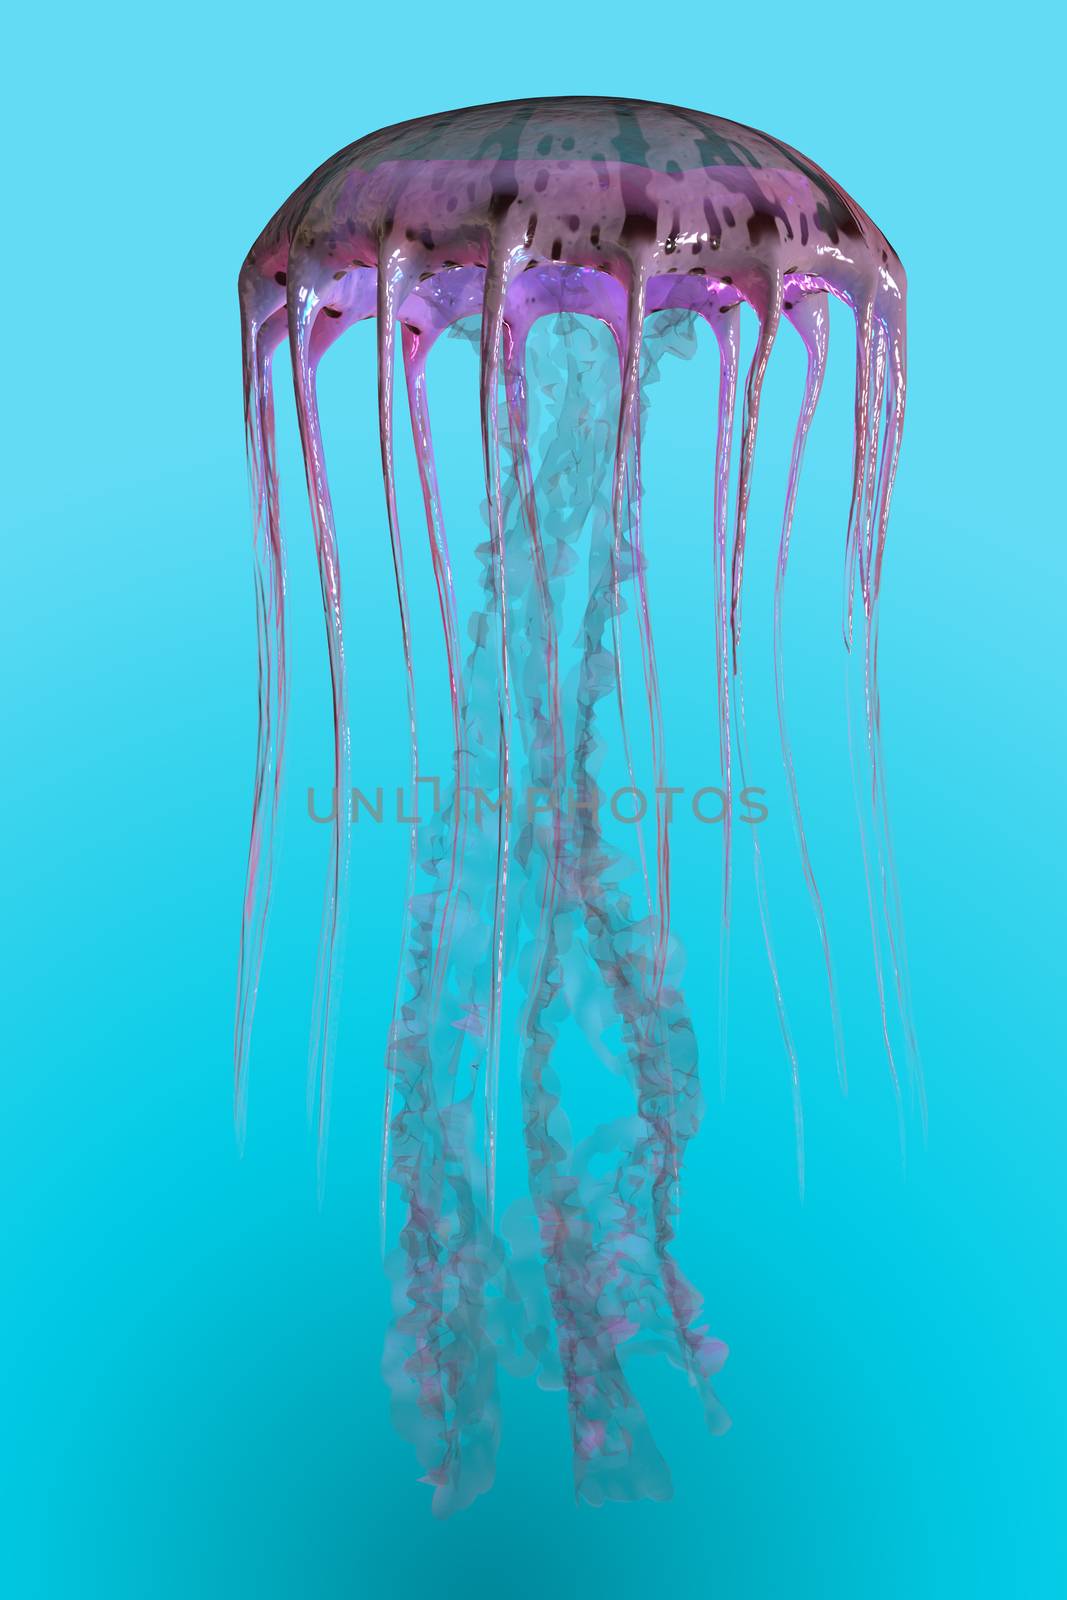 Pelagia noctiluca Jellyfish by Catmando